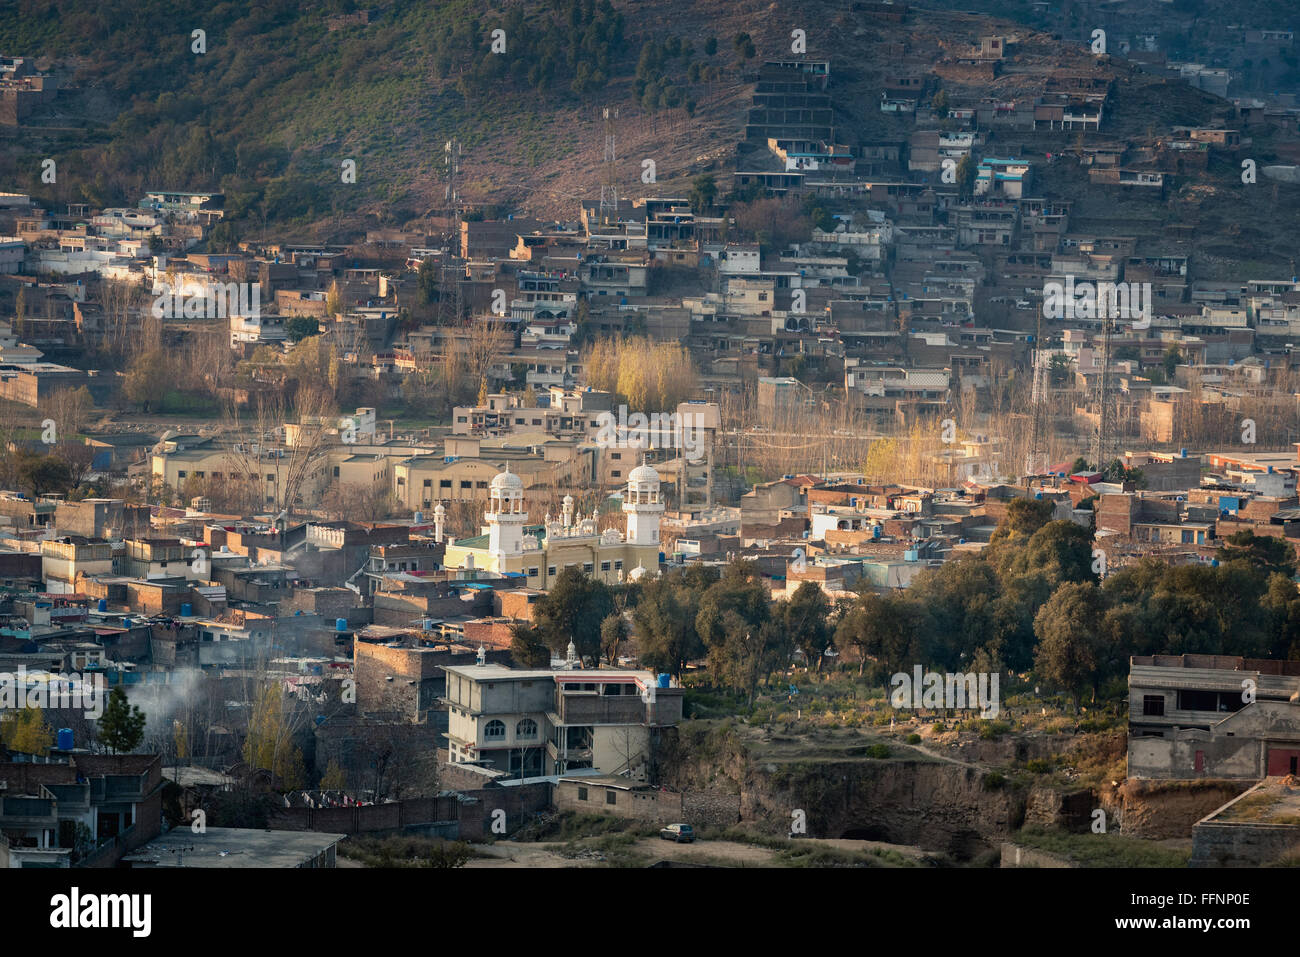 Vue aérienne de la ville de Mingora dans le district de Swat, au Pakistan. Banque D'Images